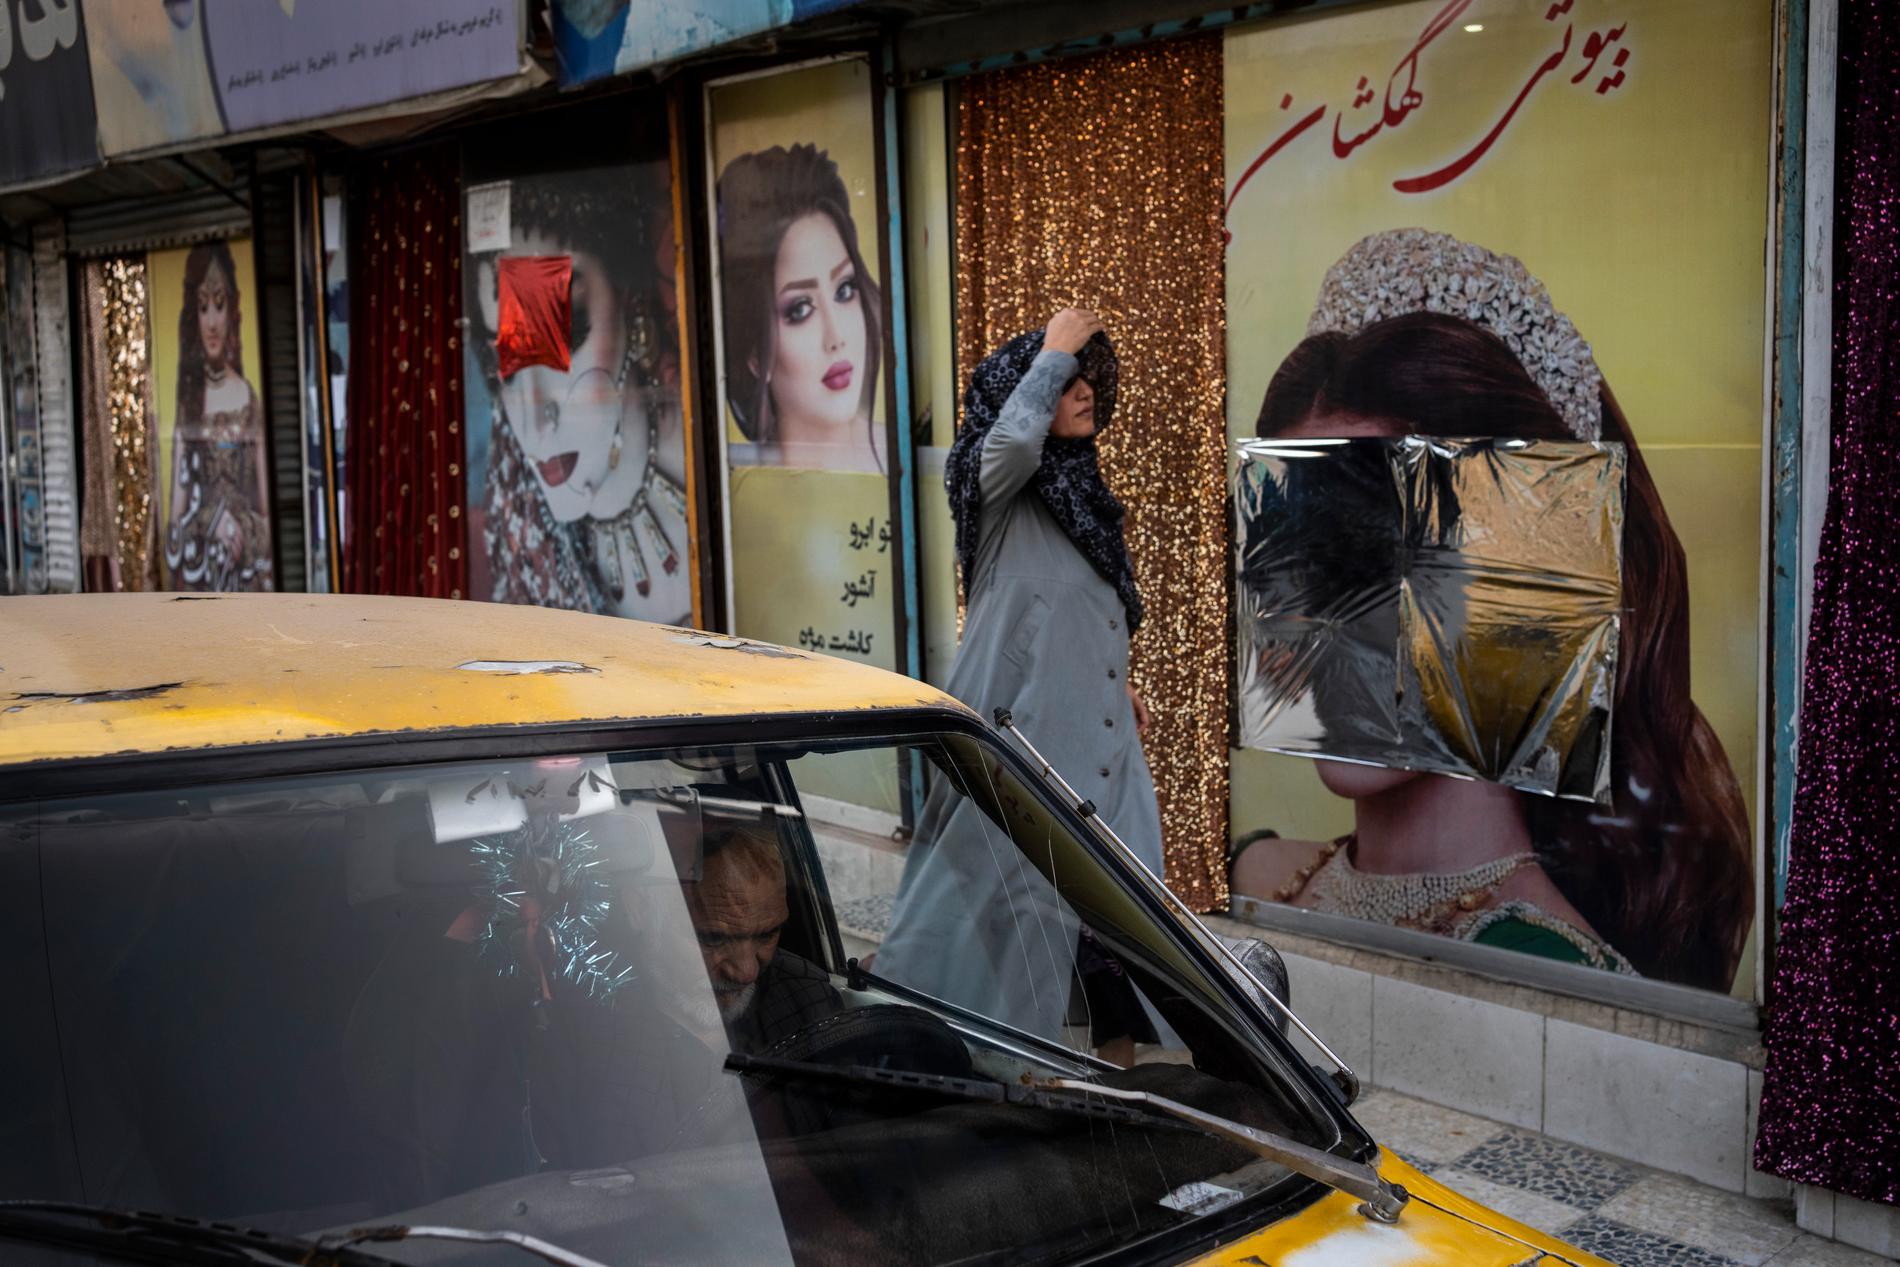 Sedan talibanerna tog kontroll över Kabul har flera bilder på kvinnor vid skönhetssalonger blivit övertäckte eller nedtagna. Bild från den 12 september.